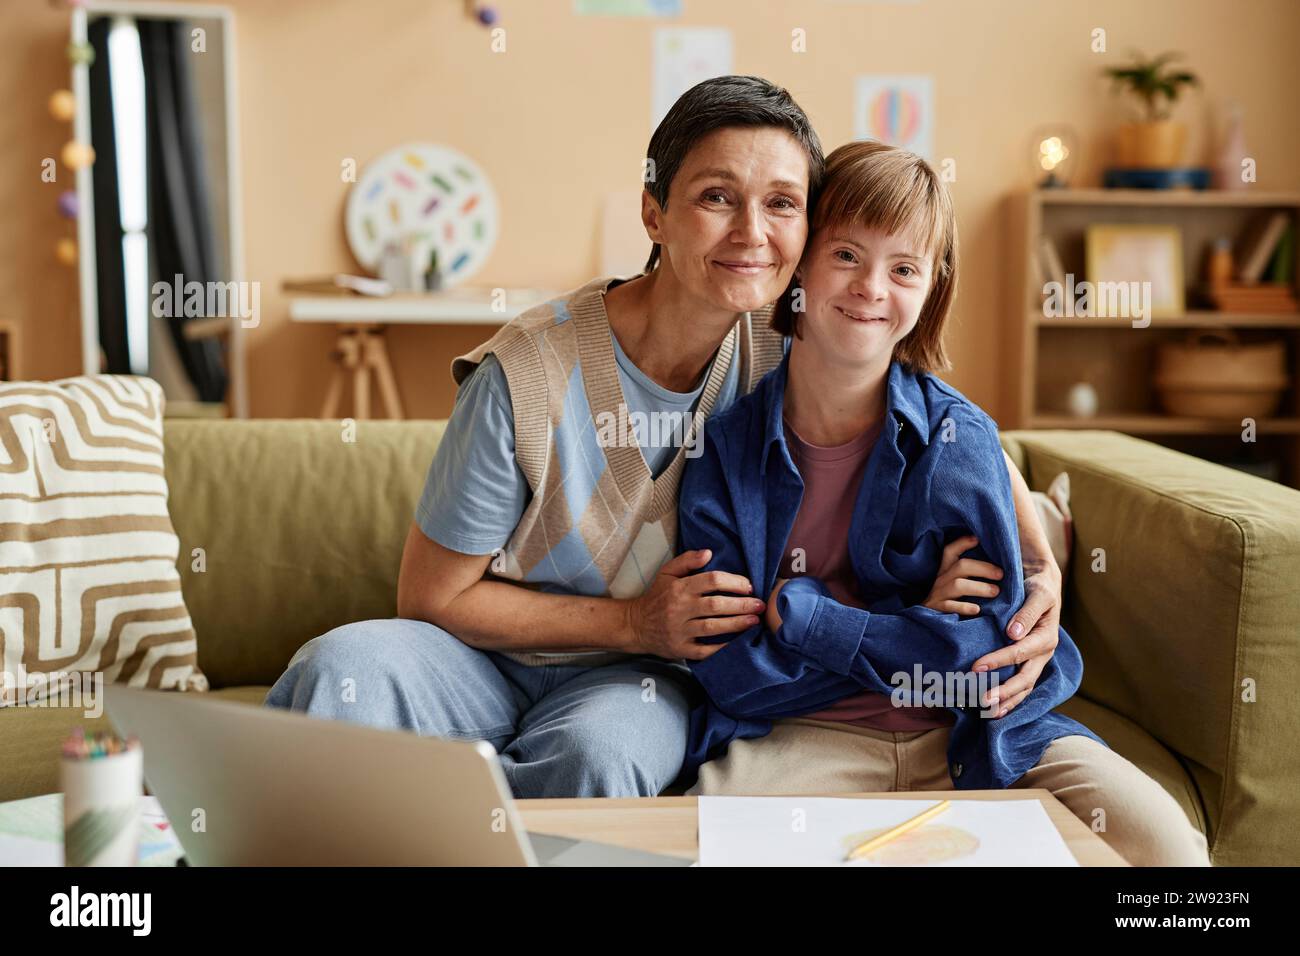 Lächelnde Mutter und ihre Tochter mit Down-Syndrom sitzen auf dem Sofa Stockfoto